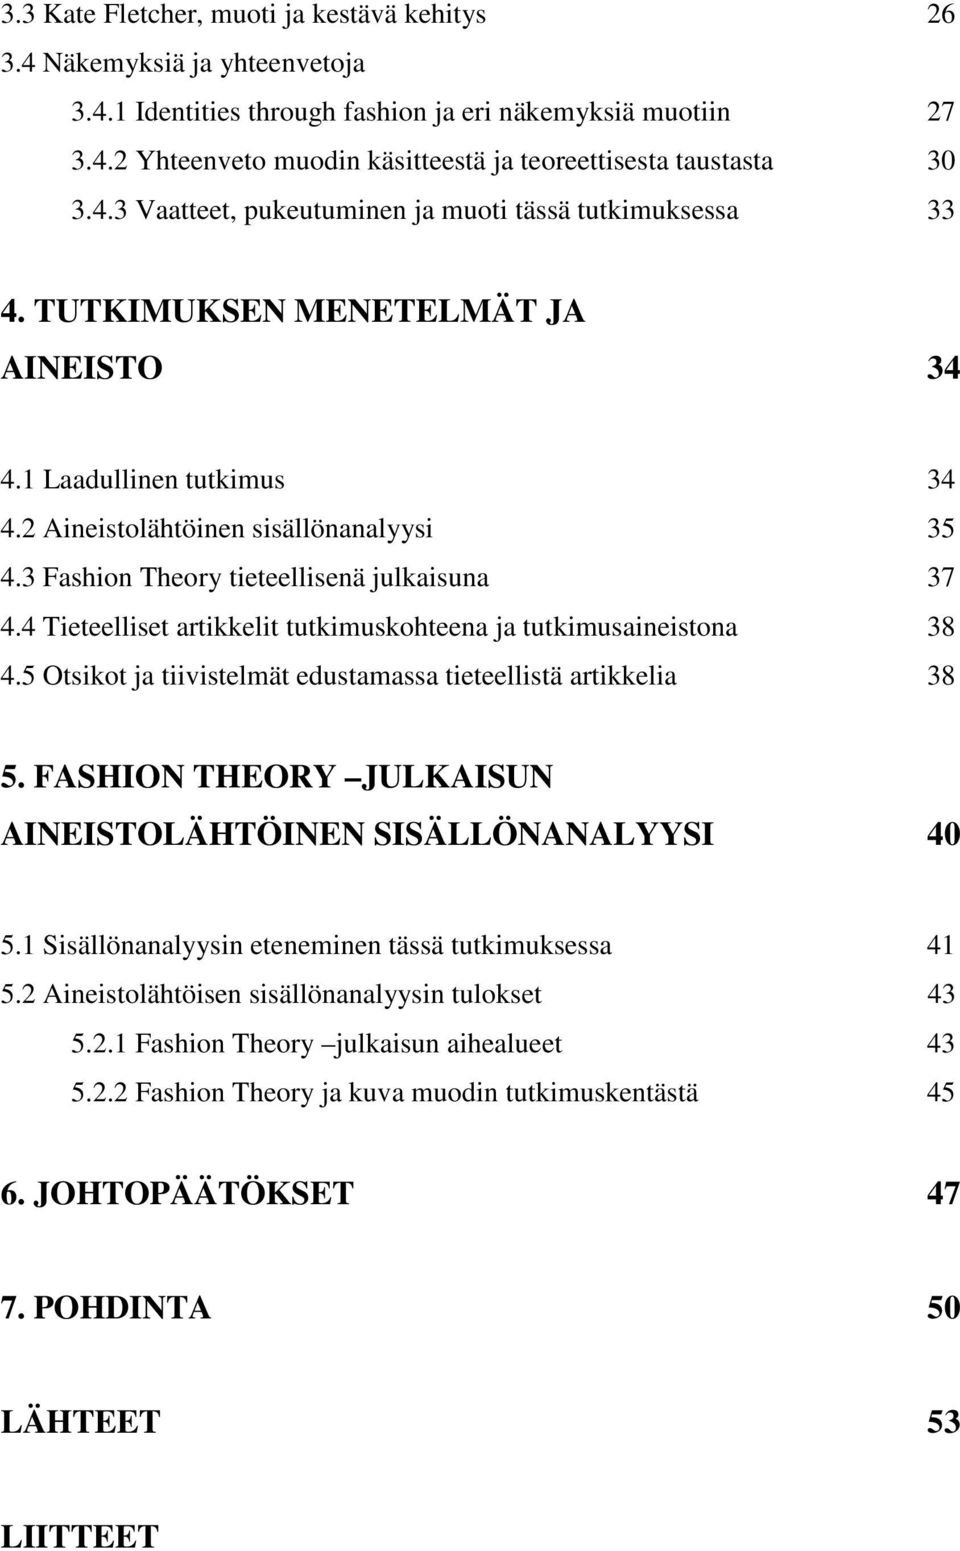 3 Fashion Theory tieteellisenä julkaisuna 37 4.4 Tieteelliset artikkelit tutkimuskohteena ja tutkimusaineistona 38 4.5 Otsikot ja tiivistelmät edustamassa tieteellistä artikkelia 38 5.